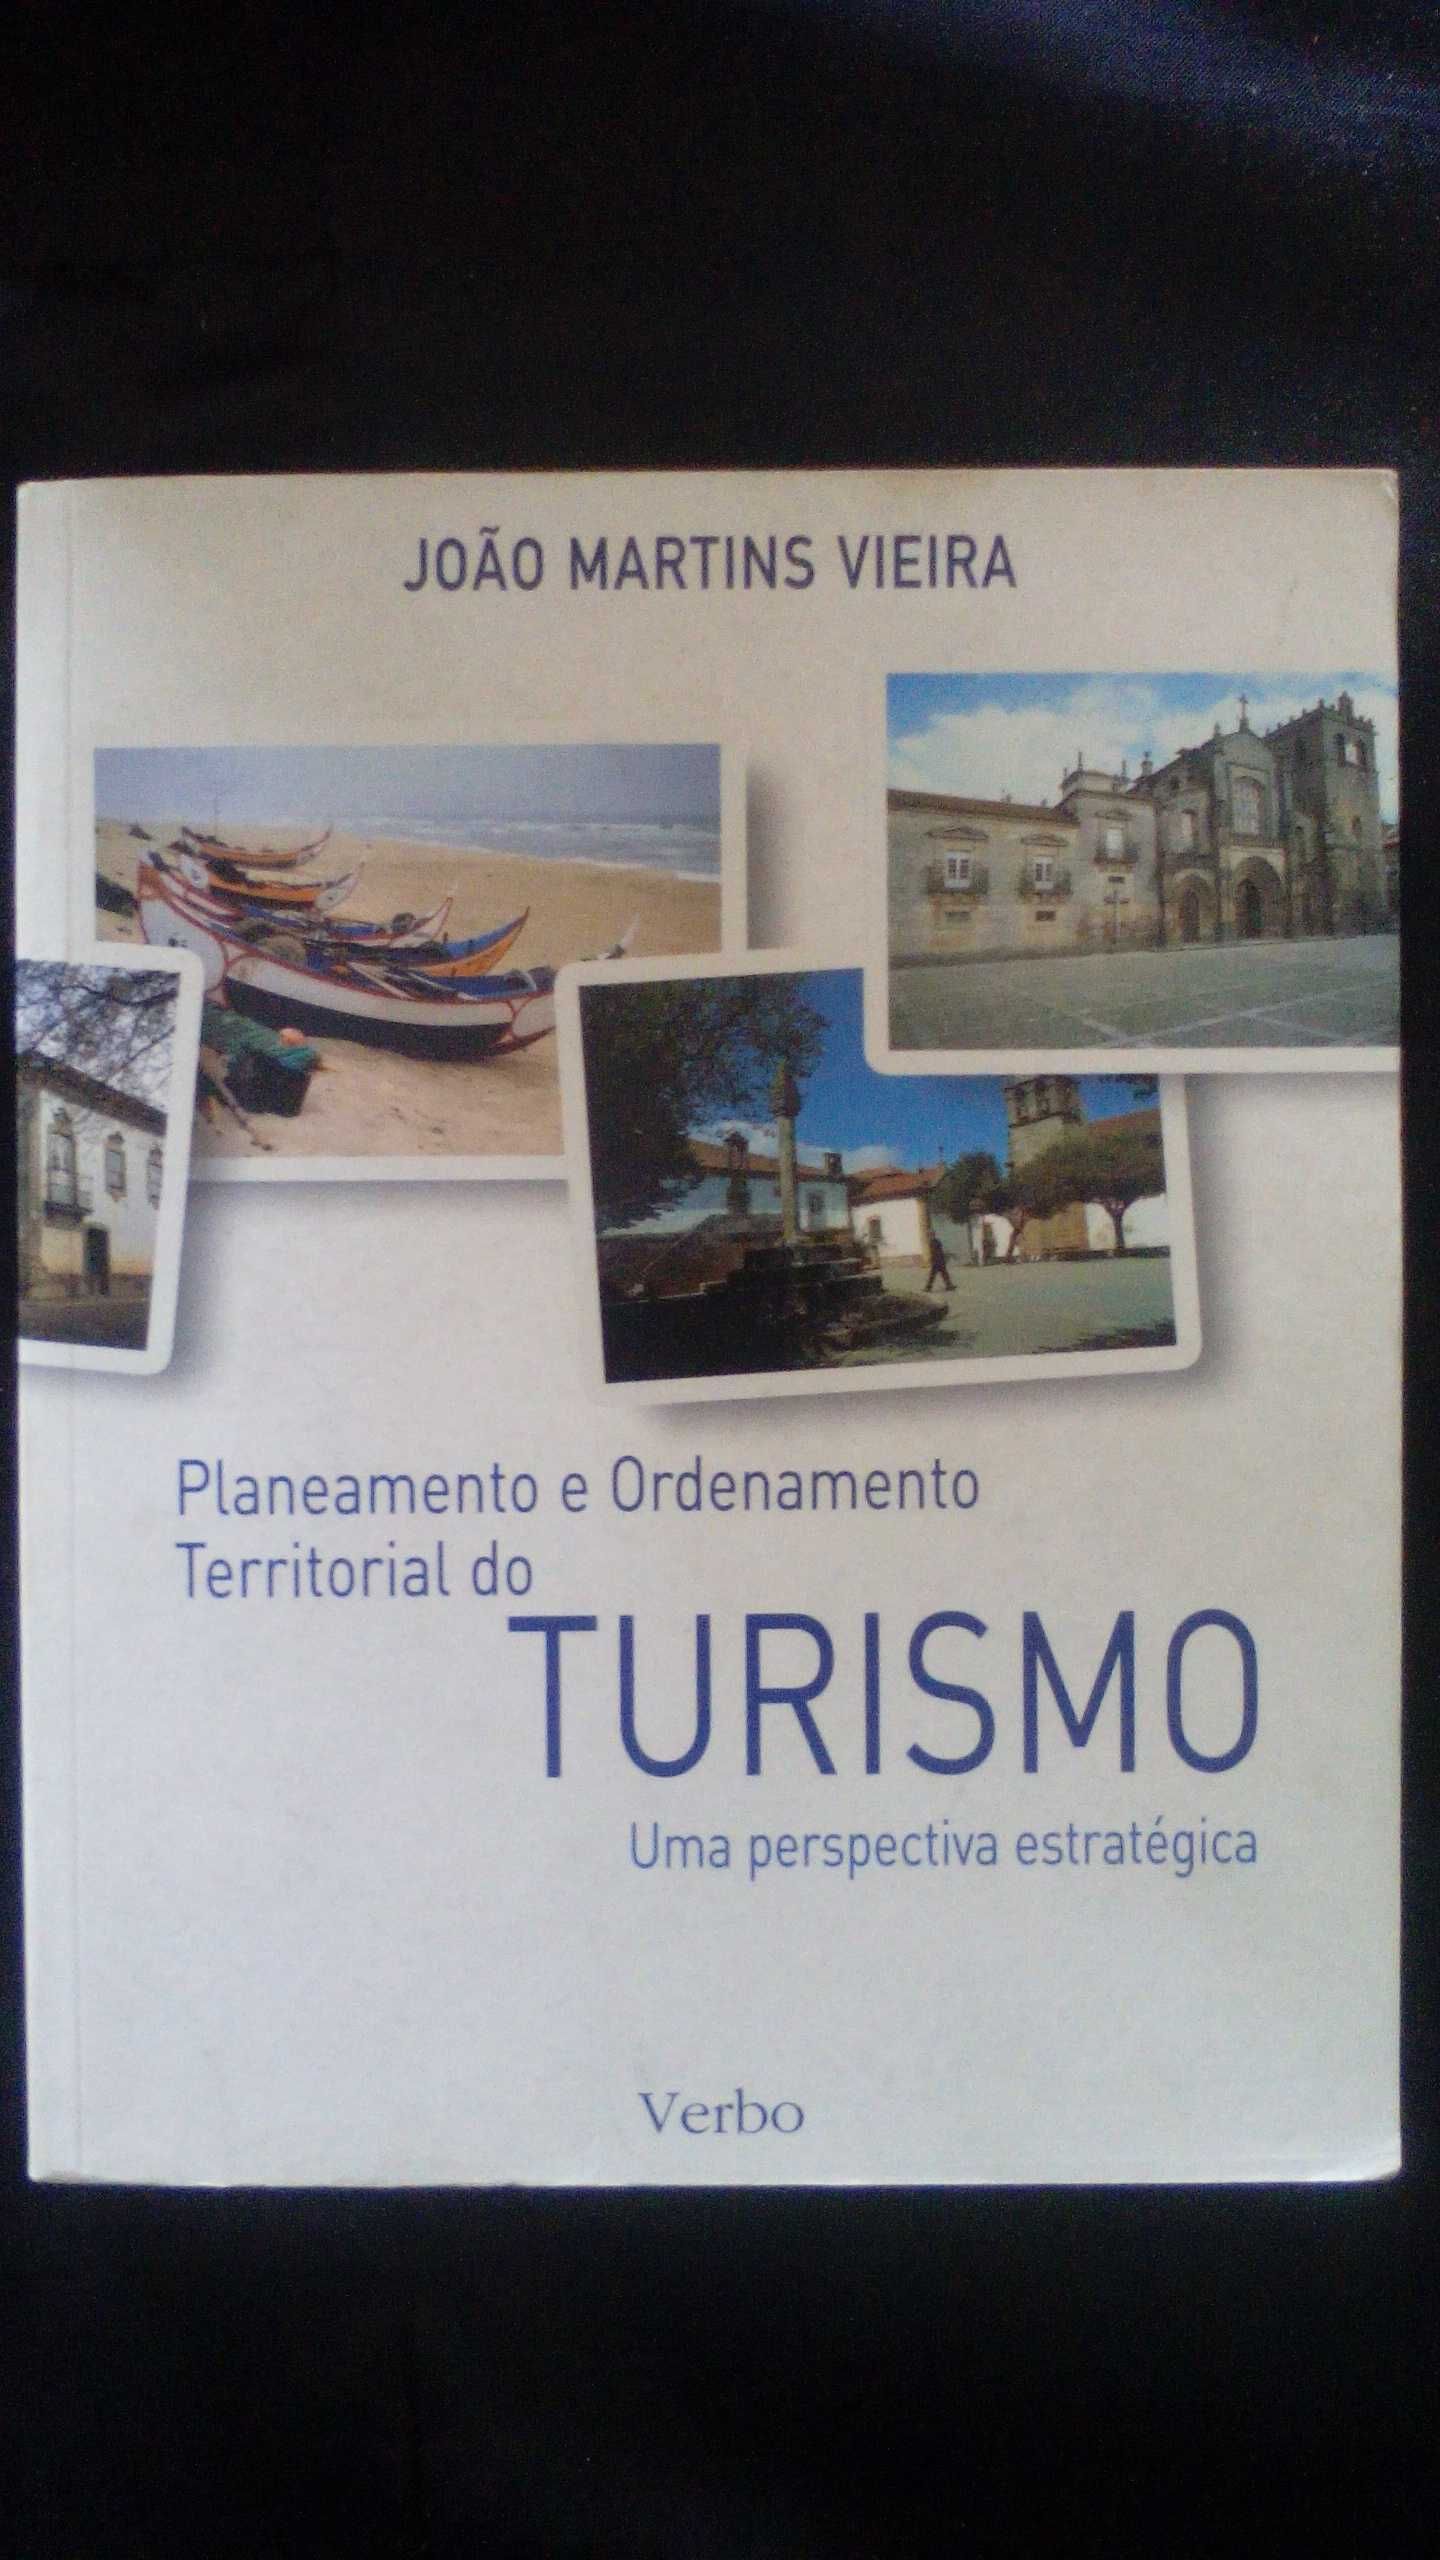 Turismo, Uma Perspetiva Estratégica, de João Martins Vieira